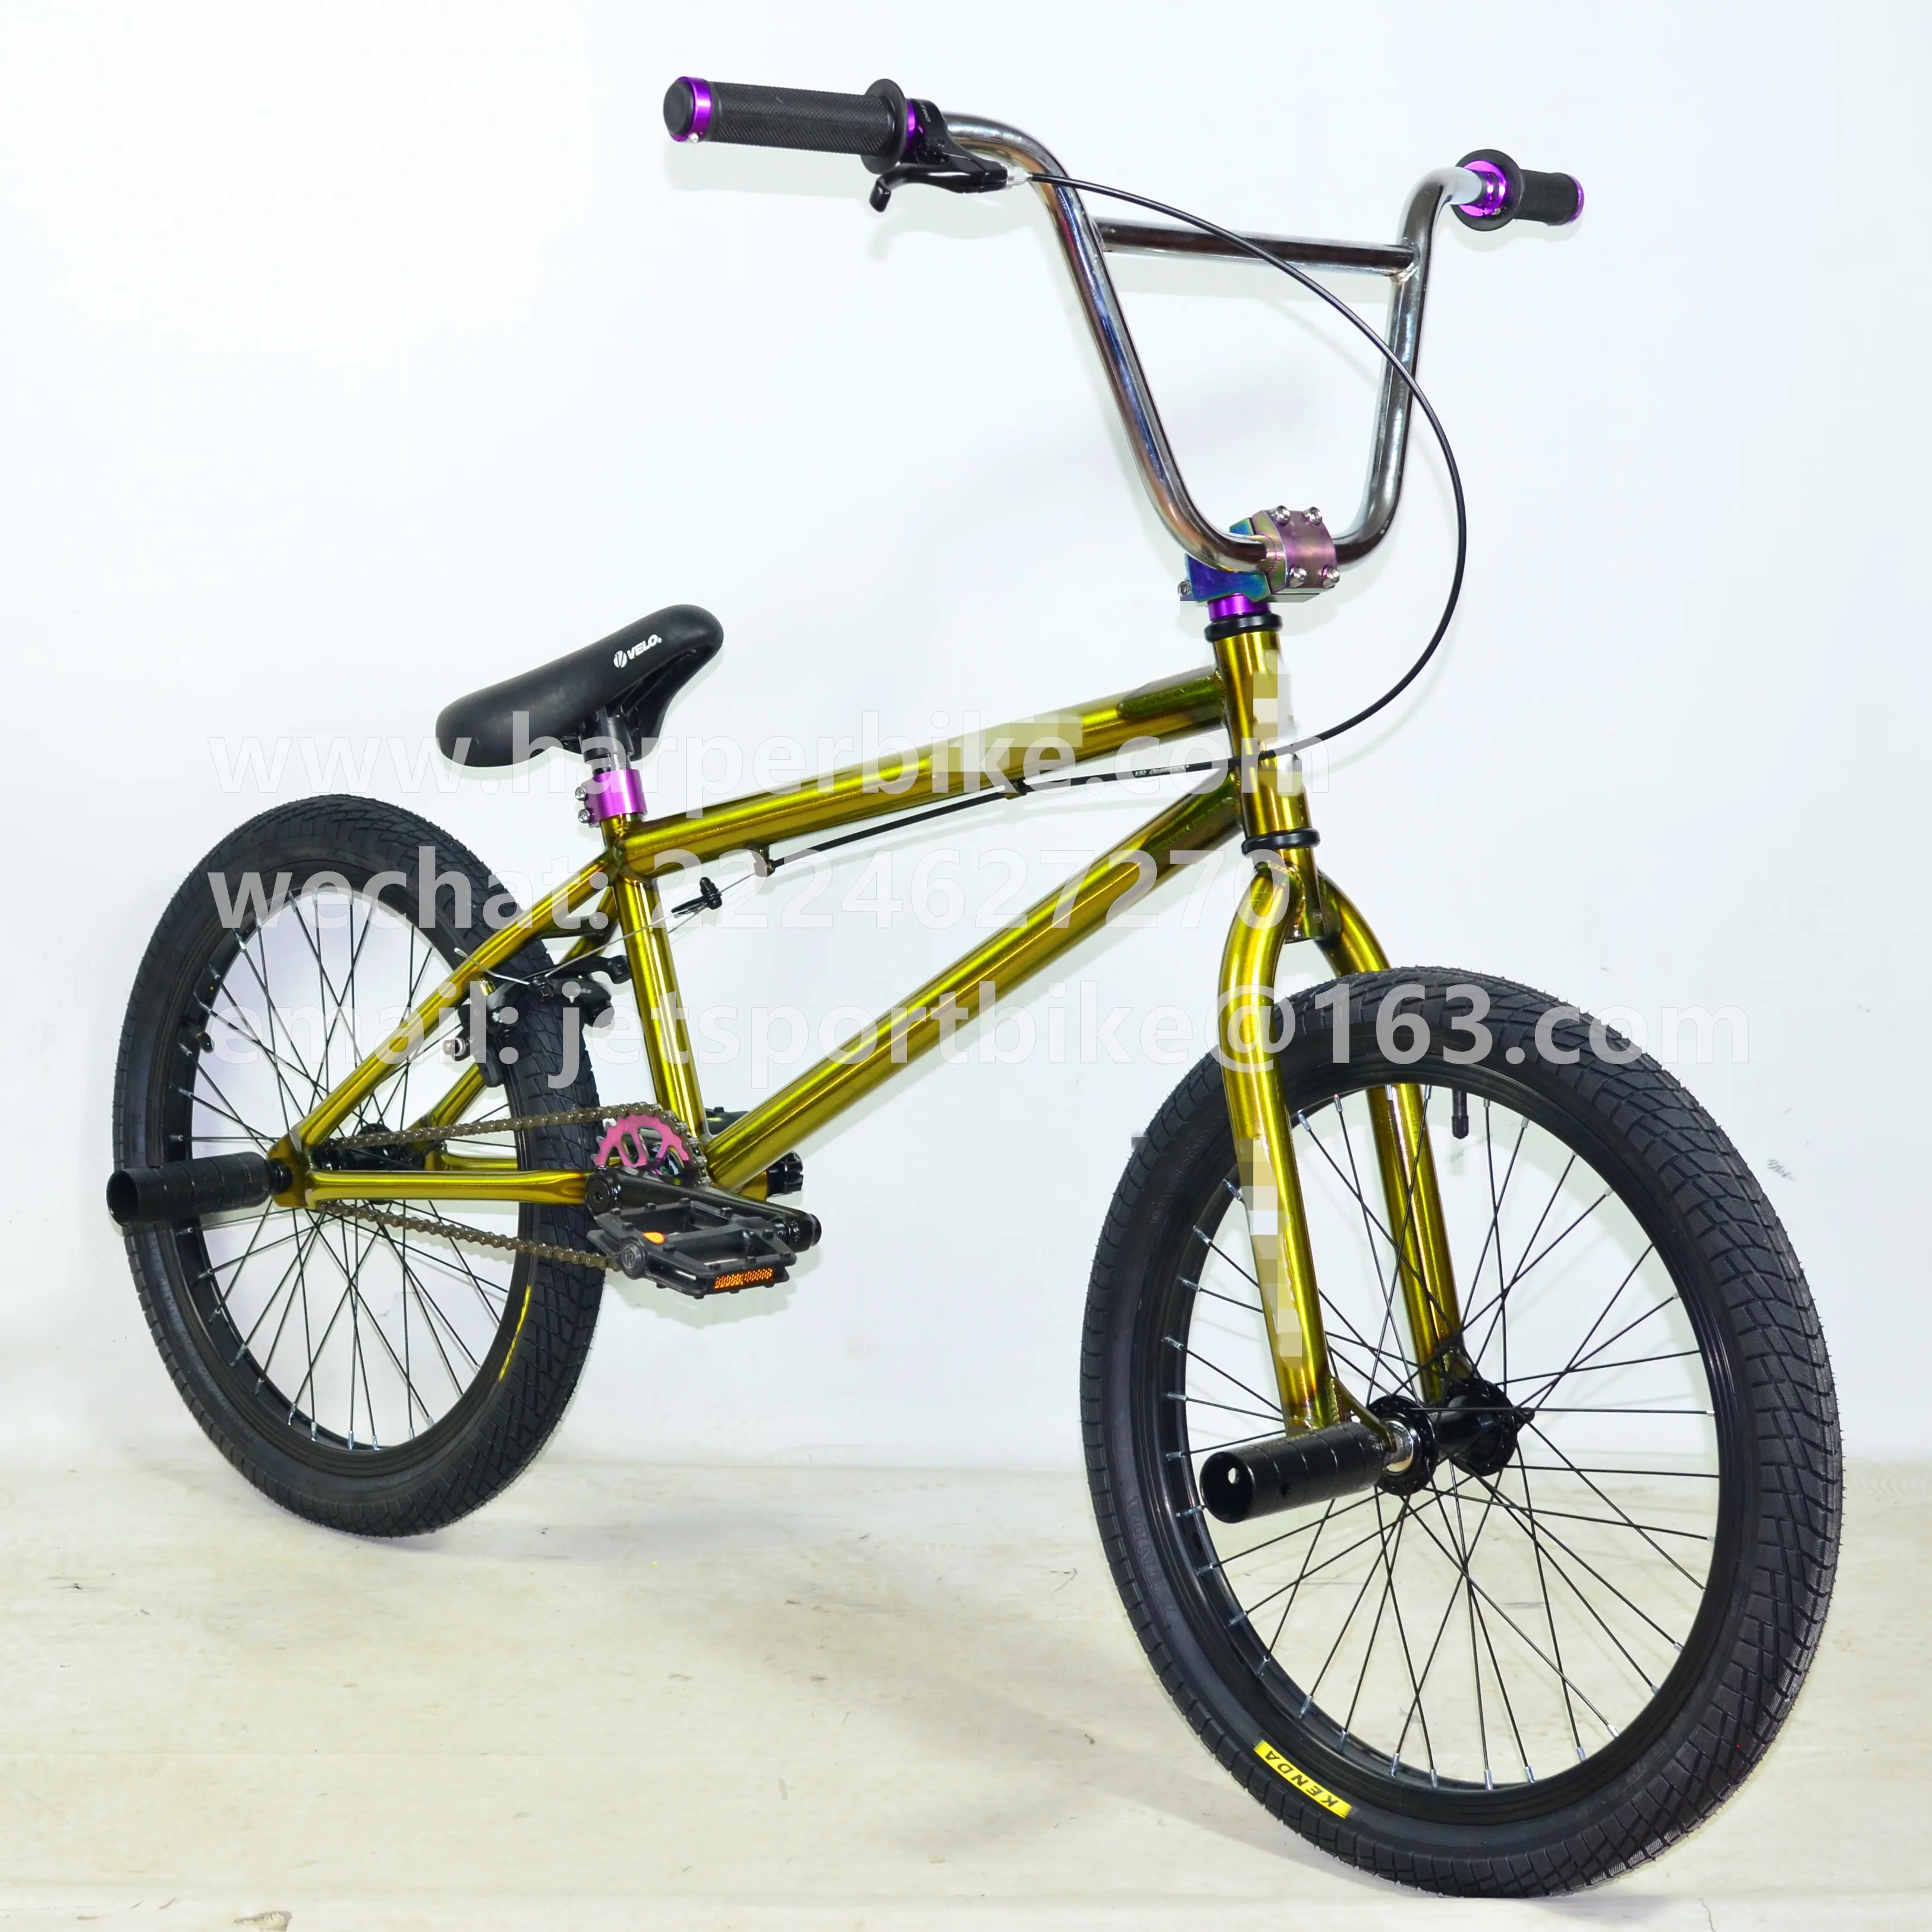 Uniqueグロス生色bmx 20インチフリースタイル自転車